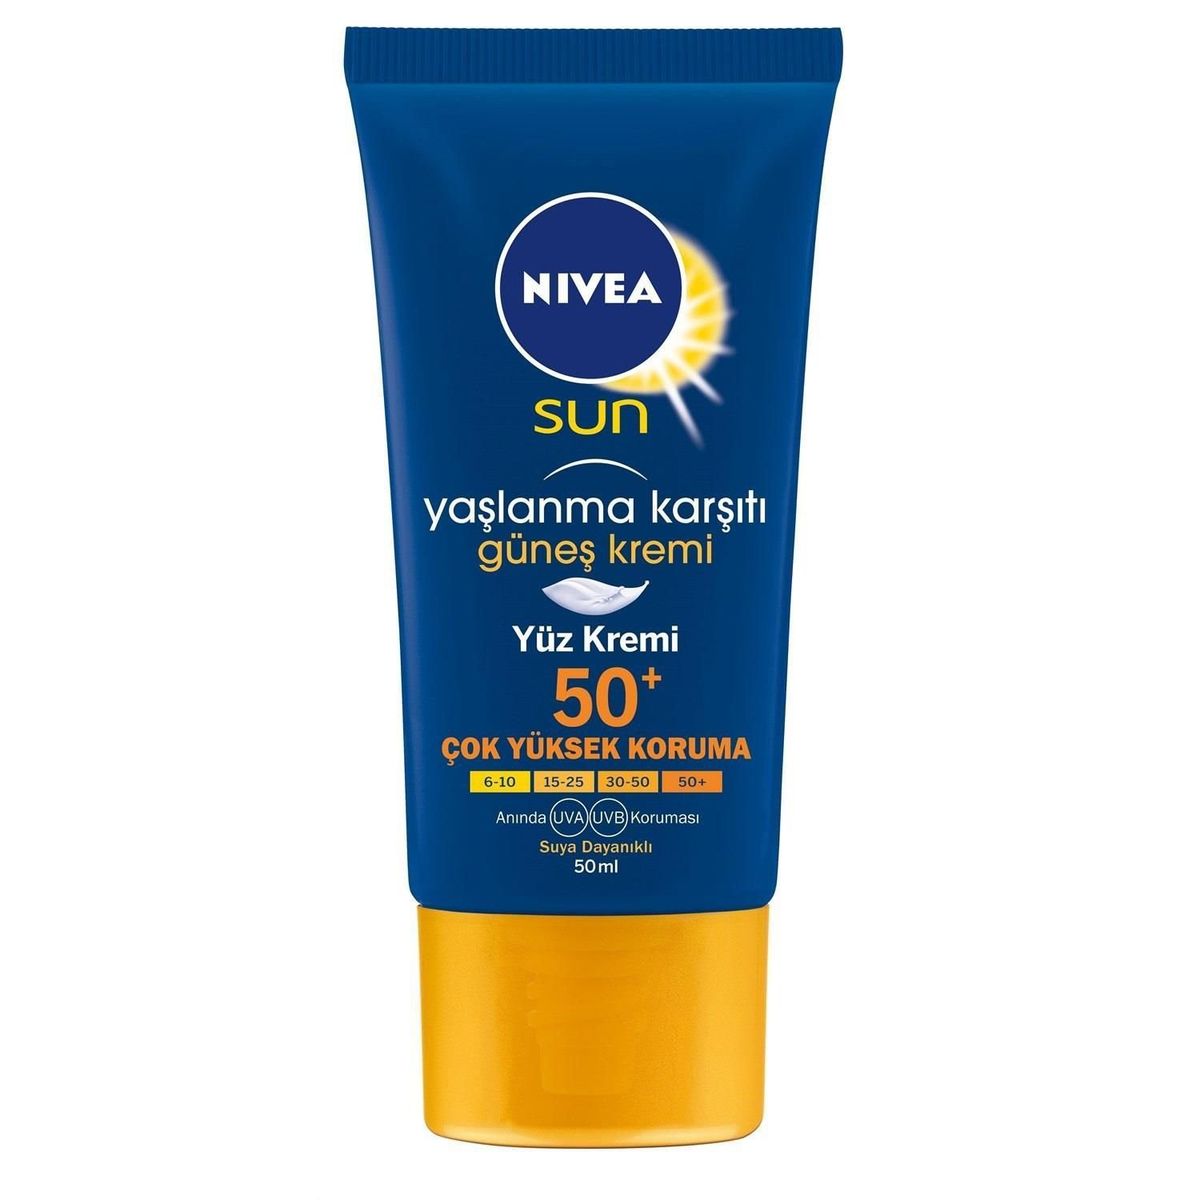 Солнцезащитный крем для лица 40. Солнцезащитный крем Nivea Sun. Nivea солнцезащитный крем 50. Nivea Sun 50 для лица крем. Нивея солнцезащитный крем для лица SPF 50.